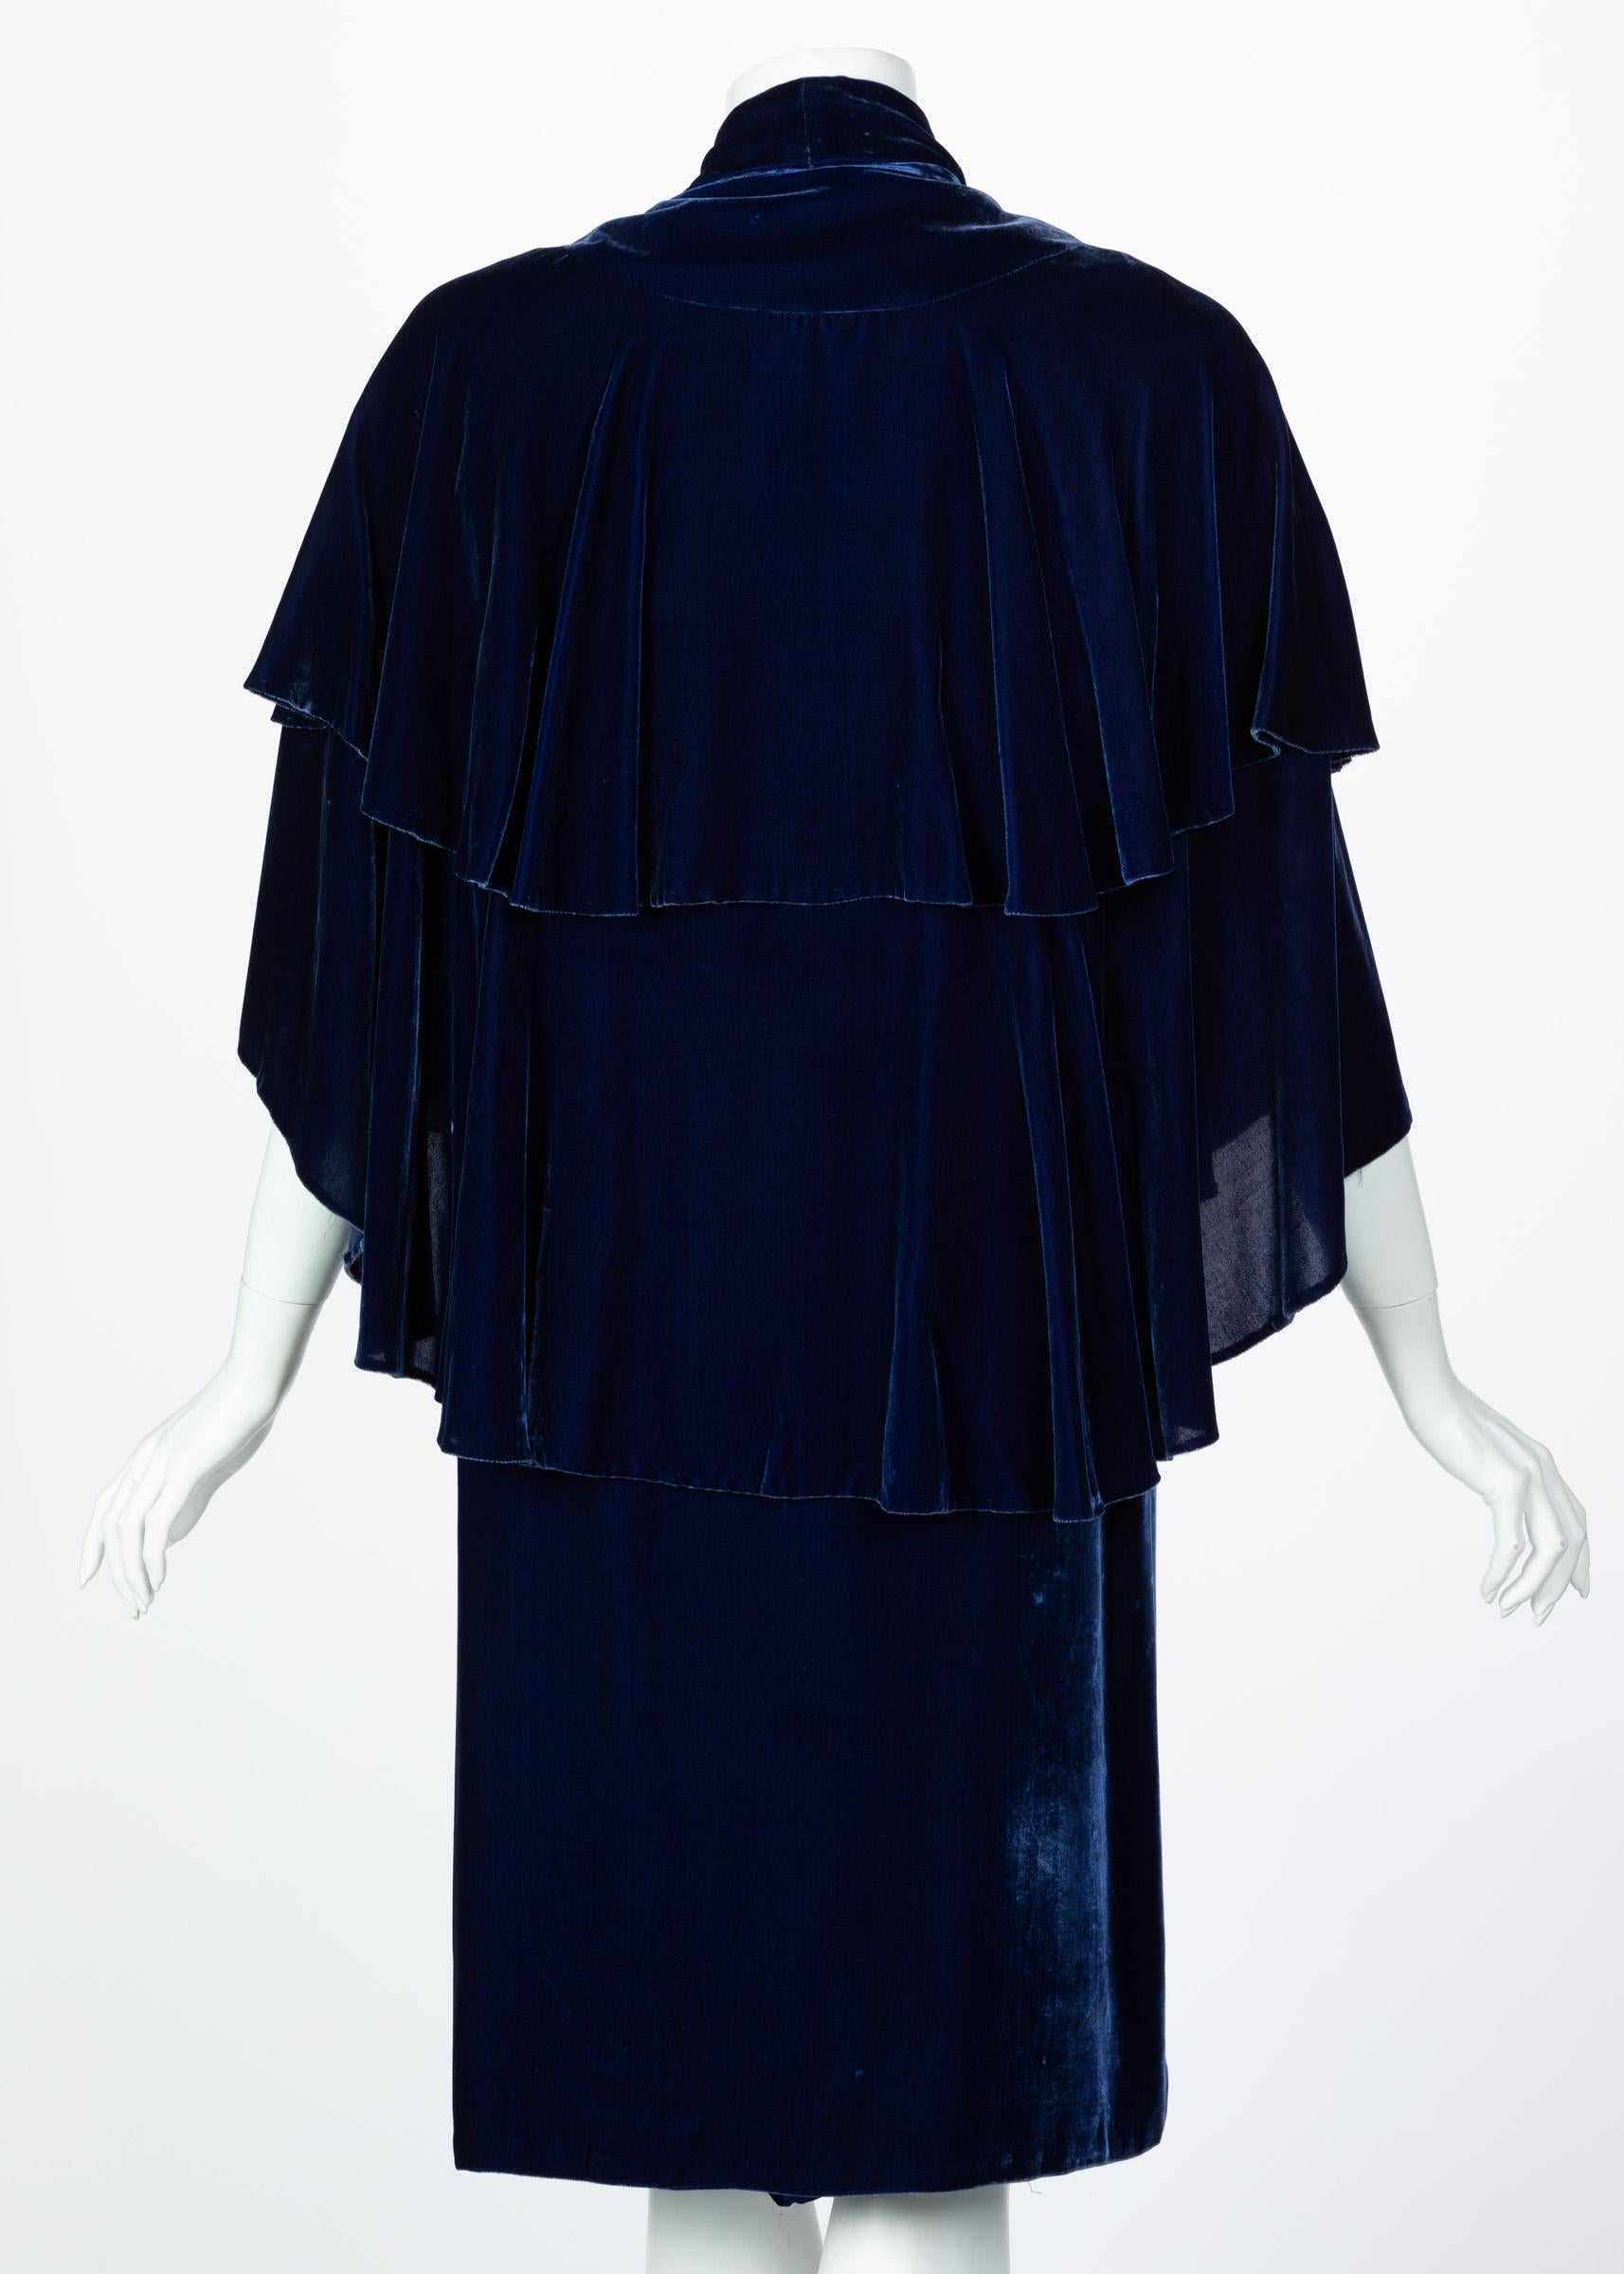 Black I Magnin & Co. Blue Silk velvet Evening Cape Coat, 1930s